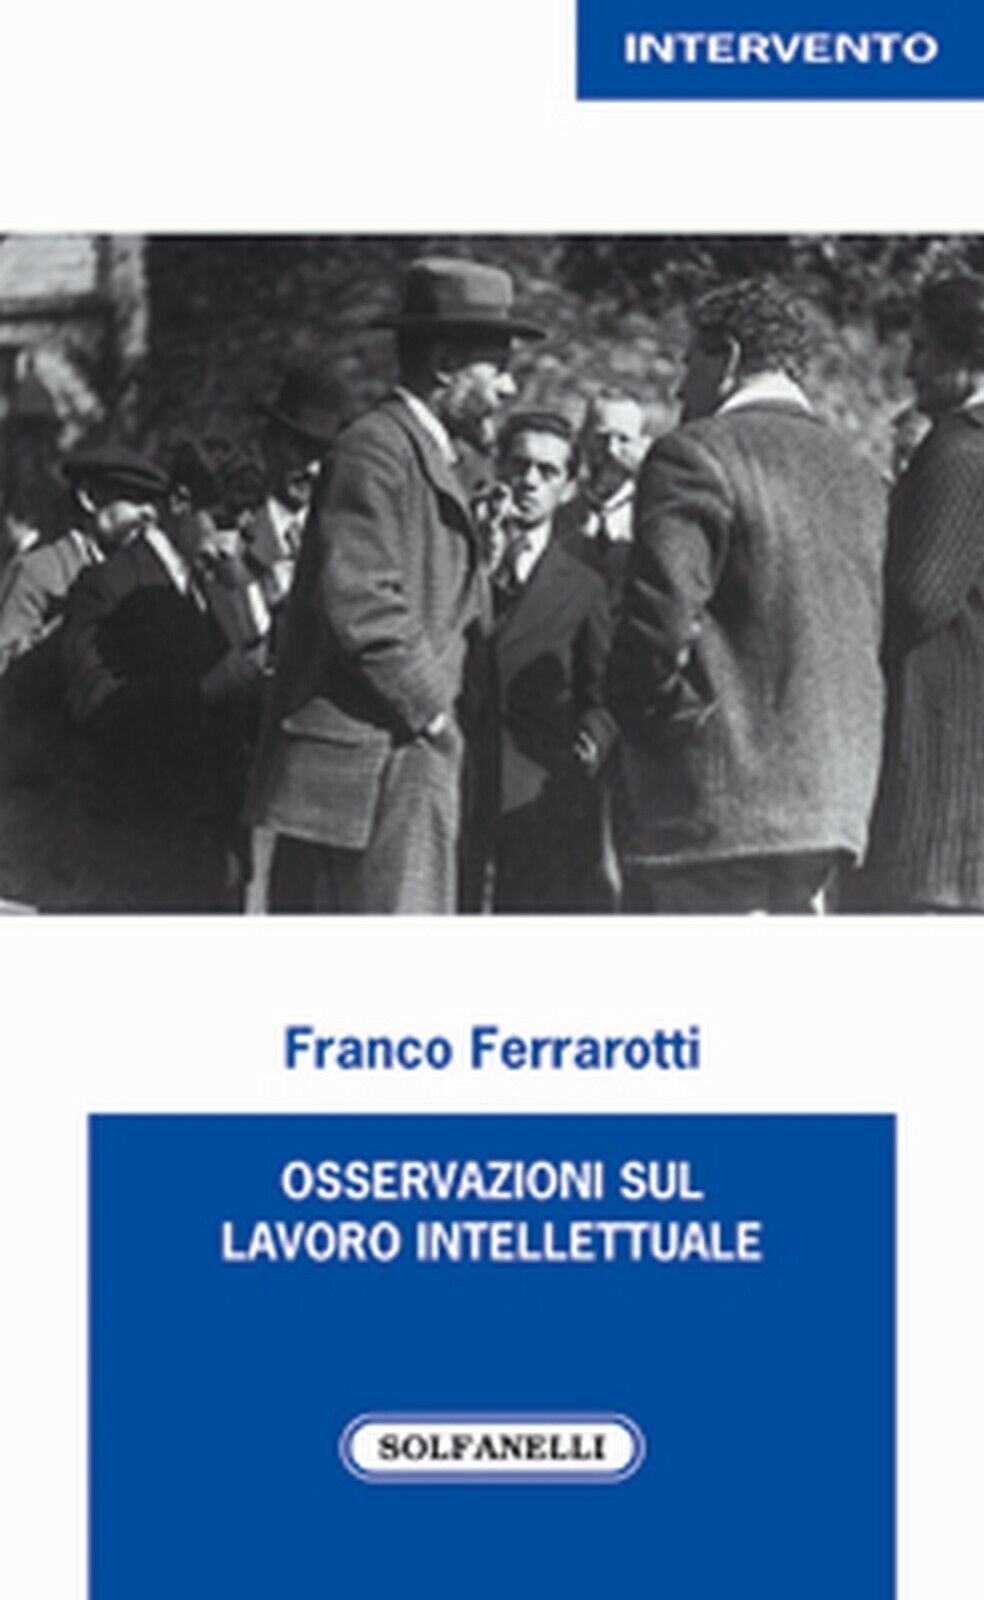 OSSERVAZIONI SUL LAVORO INTELLETTUALE, Franco Ferrarotti,  Solfanelli EdizionI libro usato